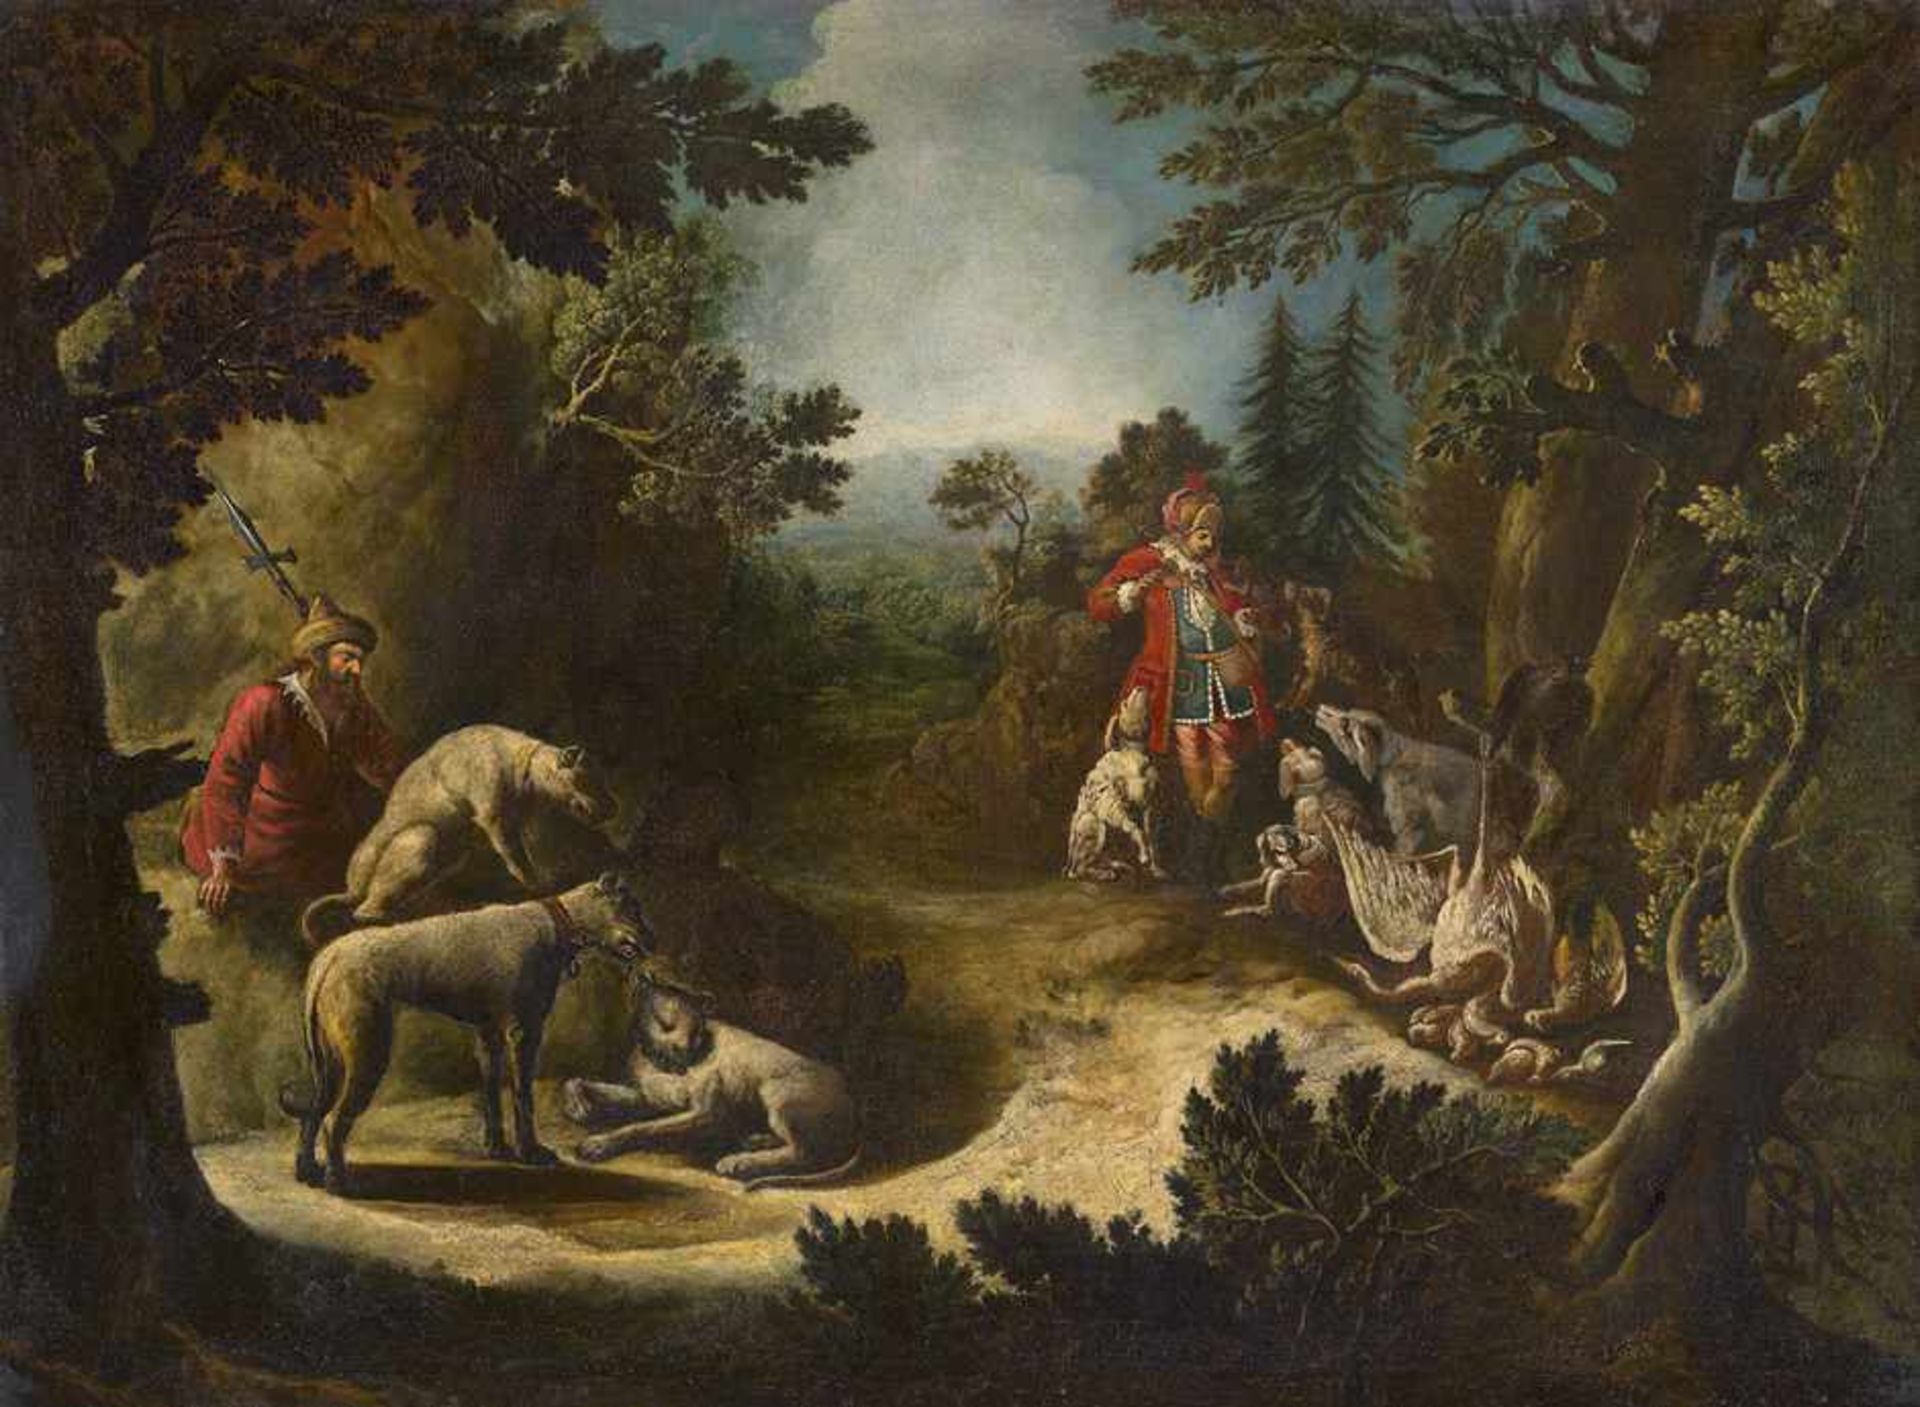 Ridinger, Johann Elias - Umkreis: JagdszeneUmkreis. Jagdszene.Öl auf Leinwand. 98,5 x 135,2 cm.Wir